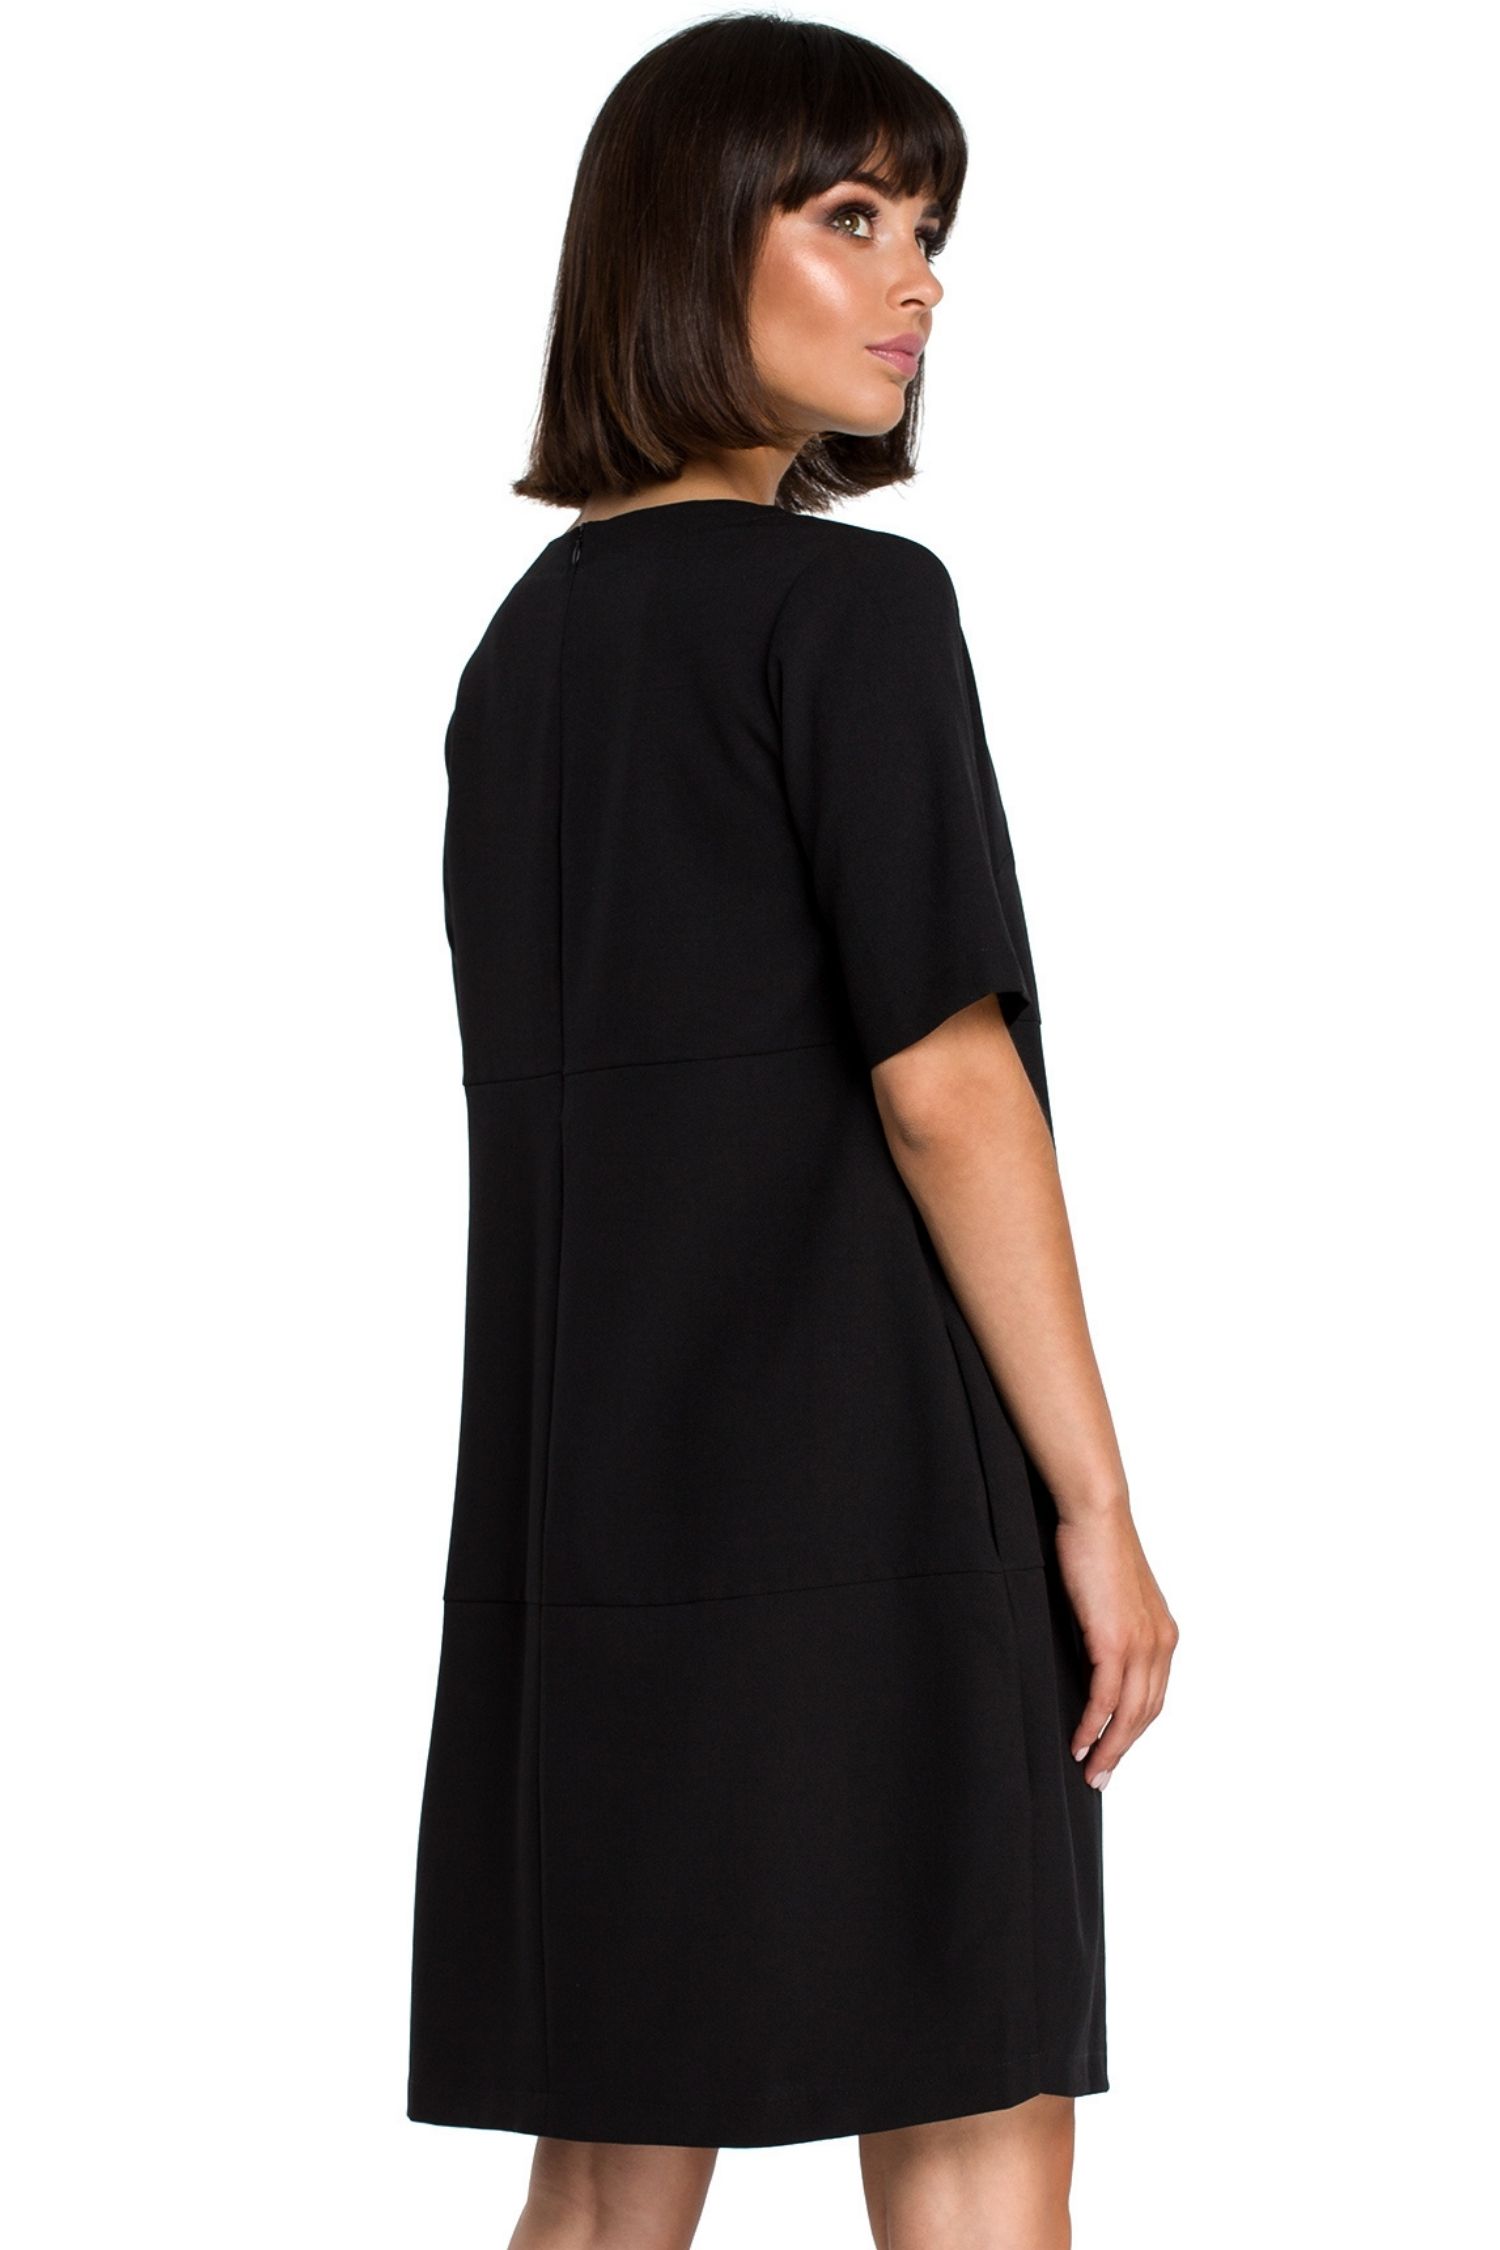 Opis: Lniana sukienka na lato bombka oversize z kieszeniami czarna.